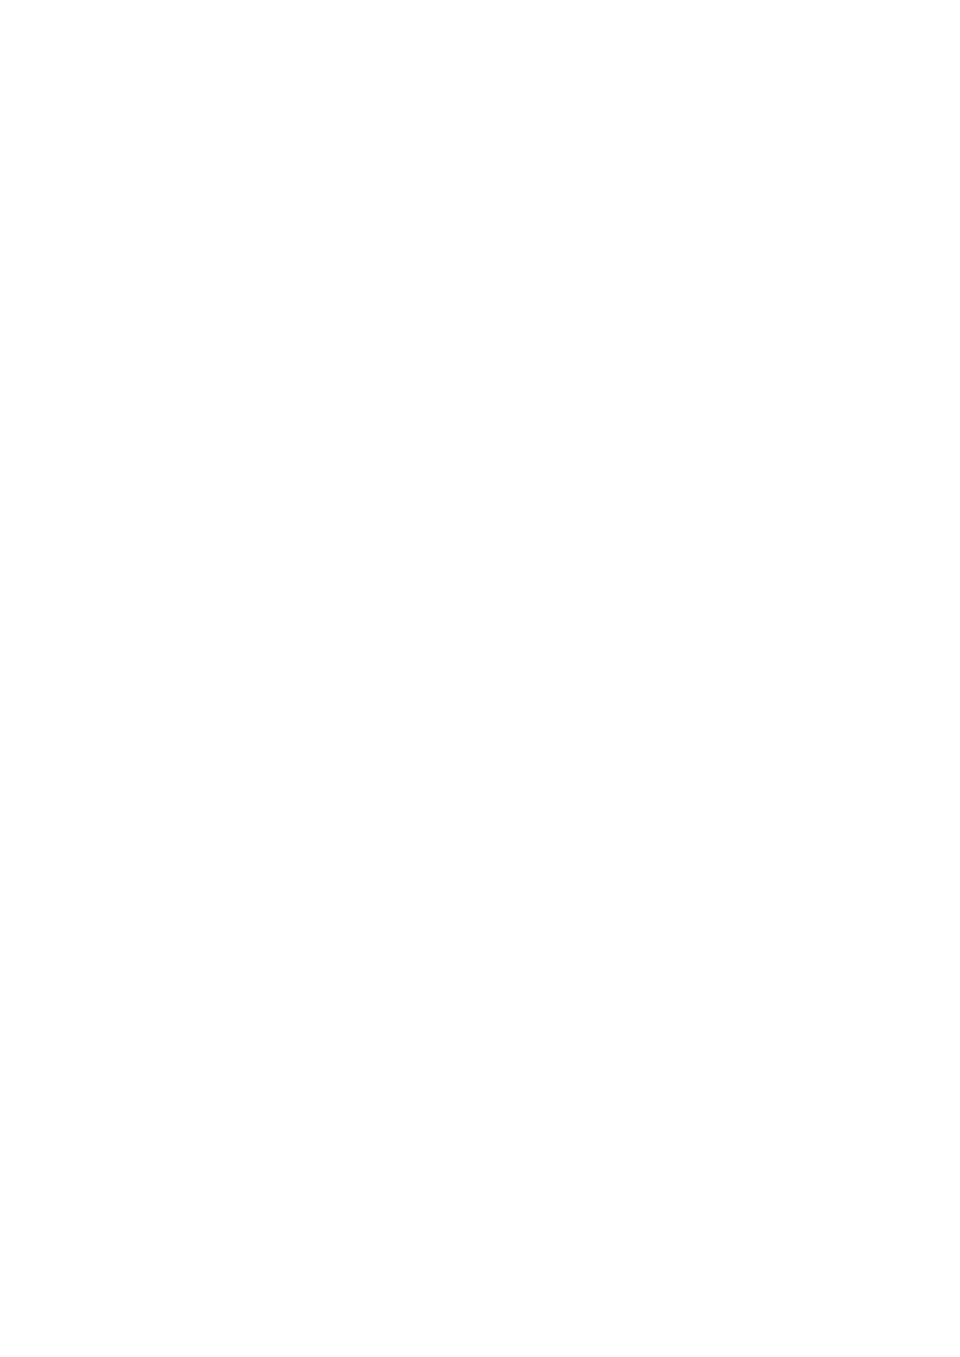 das!!) Stapschoenen ( ingelopen en genaamtekend) Regenlaarzen Ander schoeisel (slippers of iets dergelijks) Kleren om te ravotten Korte/Lange broeken Warme trui T-shirts Regenjas Ondergoed Kousen